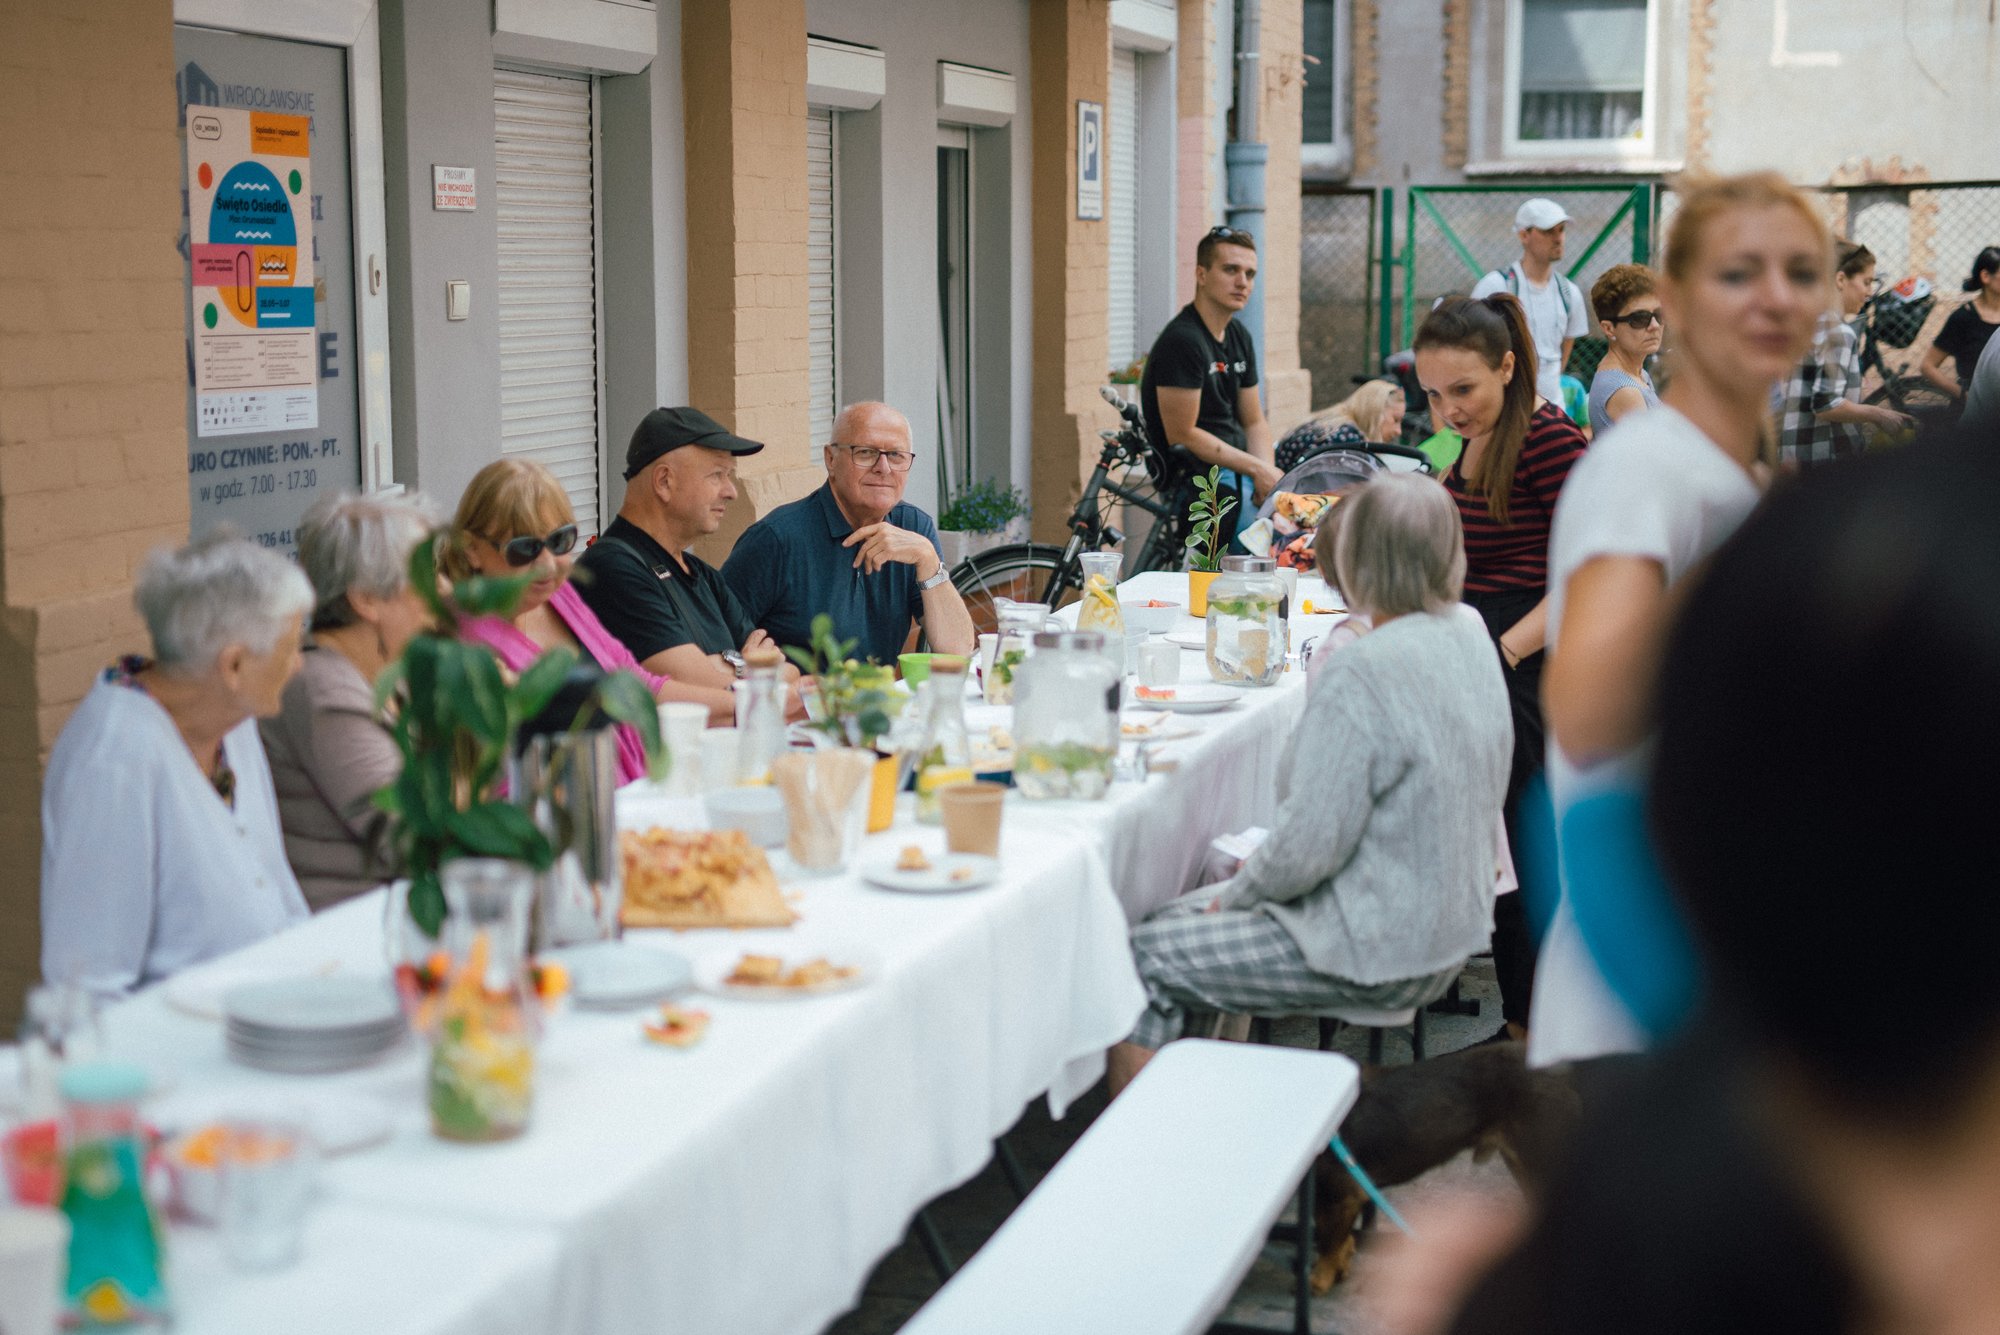 Na podwórku Curie 63A stoi długi stół przykryty białym obrusem i bogato zastawiony. Dookoła niego zgromadzeni seniorzy oraz ludzie w różnym wieku. Śmieją się i rozmawiają.